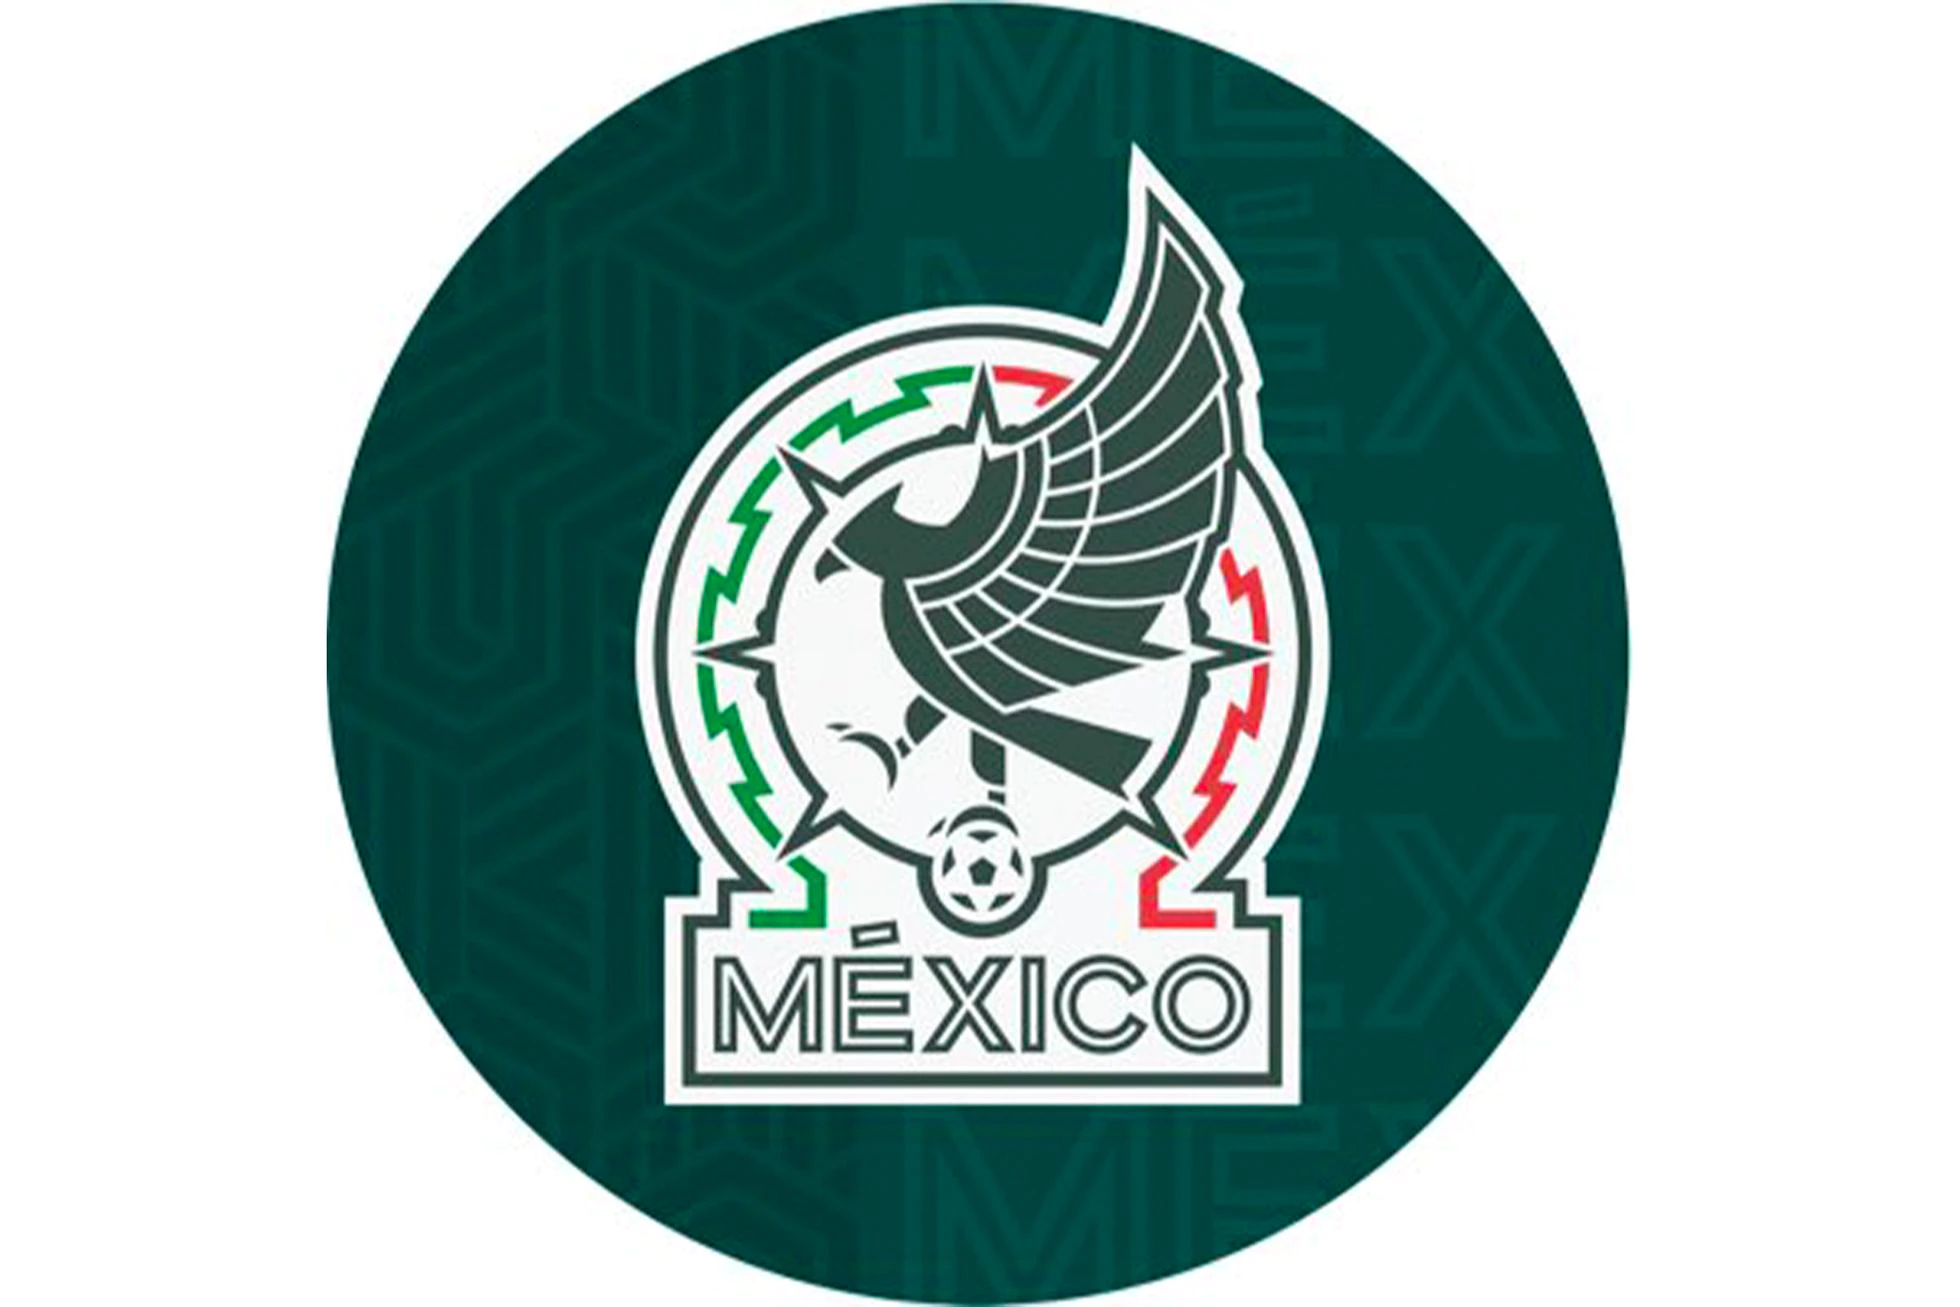 El nuevo escudo de la selección de México, presentado este jueves 30 de noviembre. SELECCIÓN NACIONAL